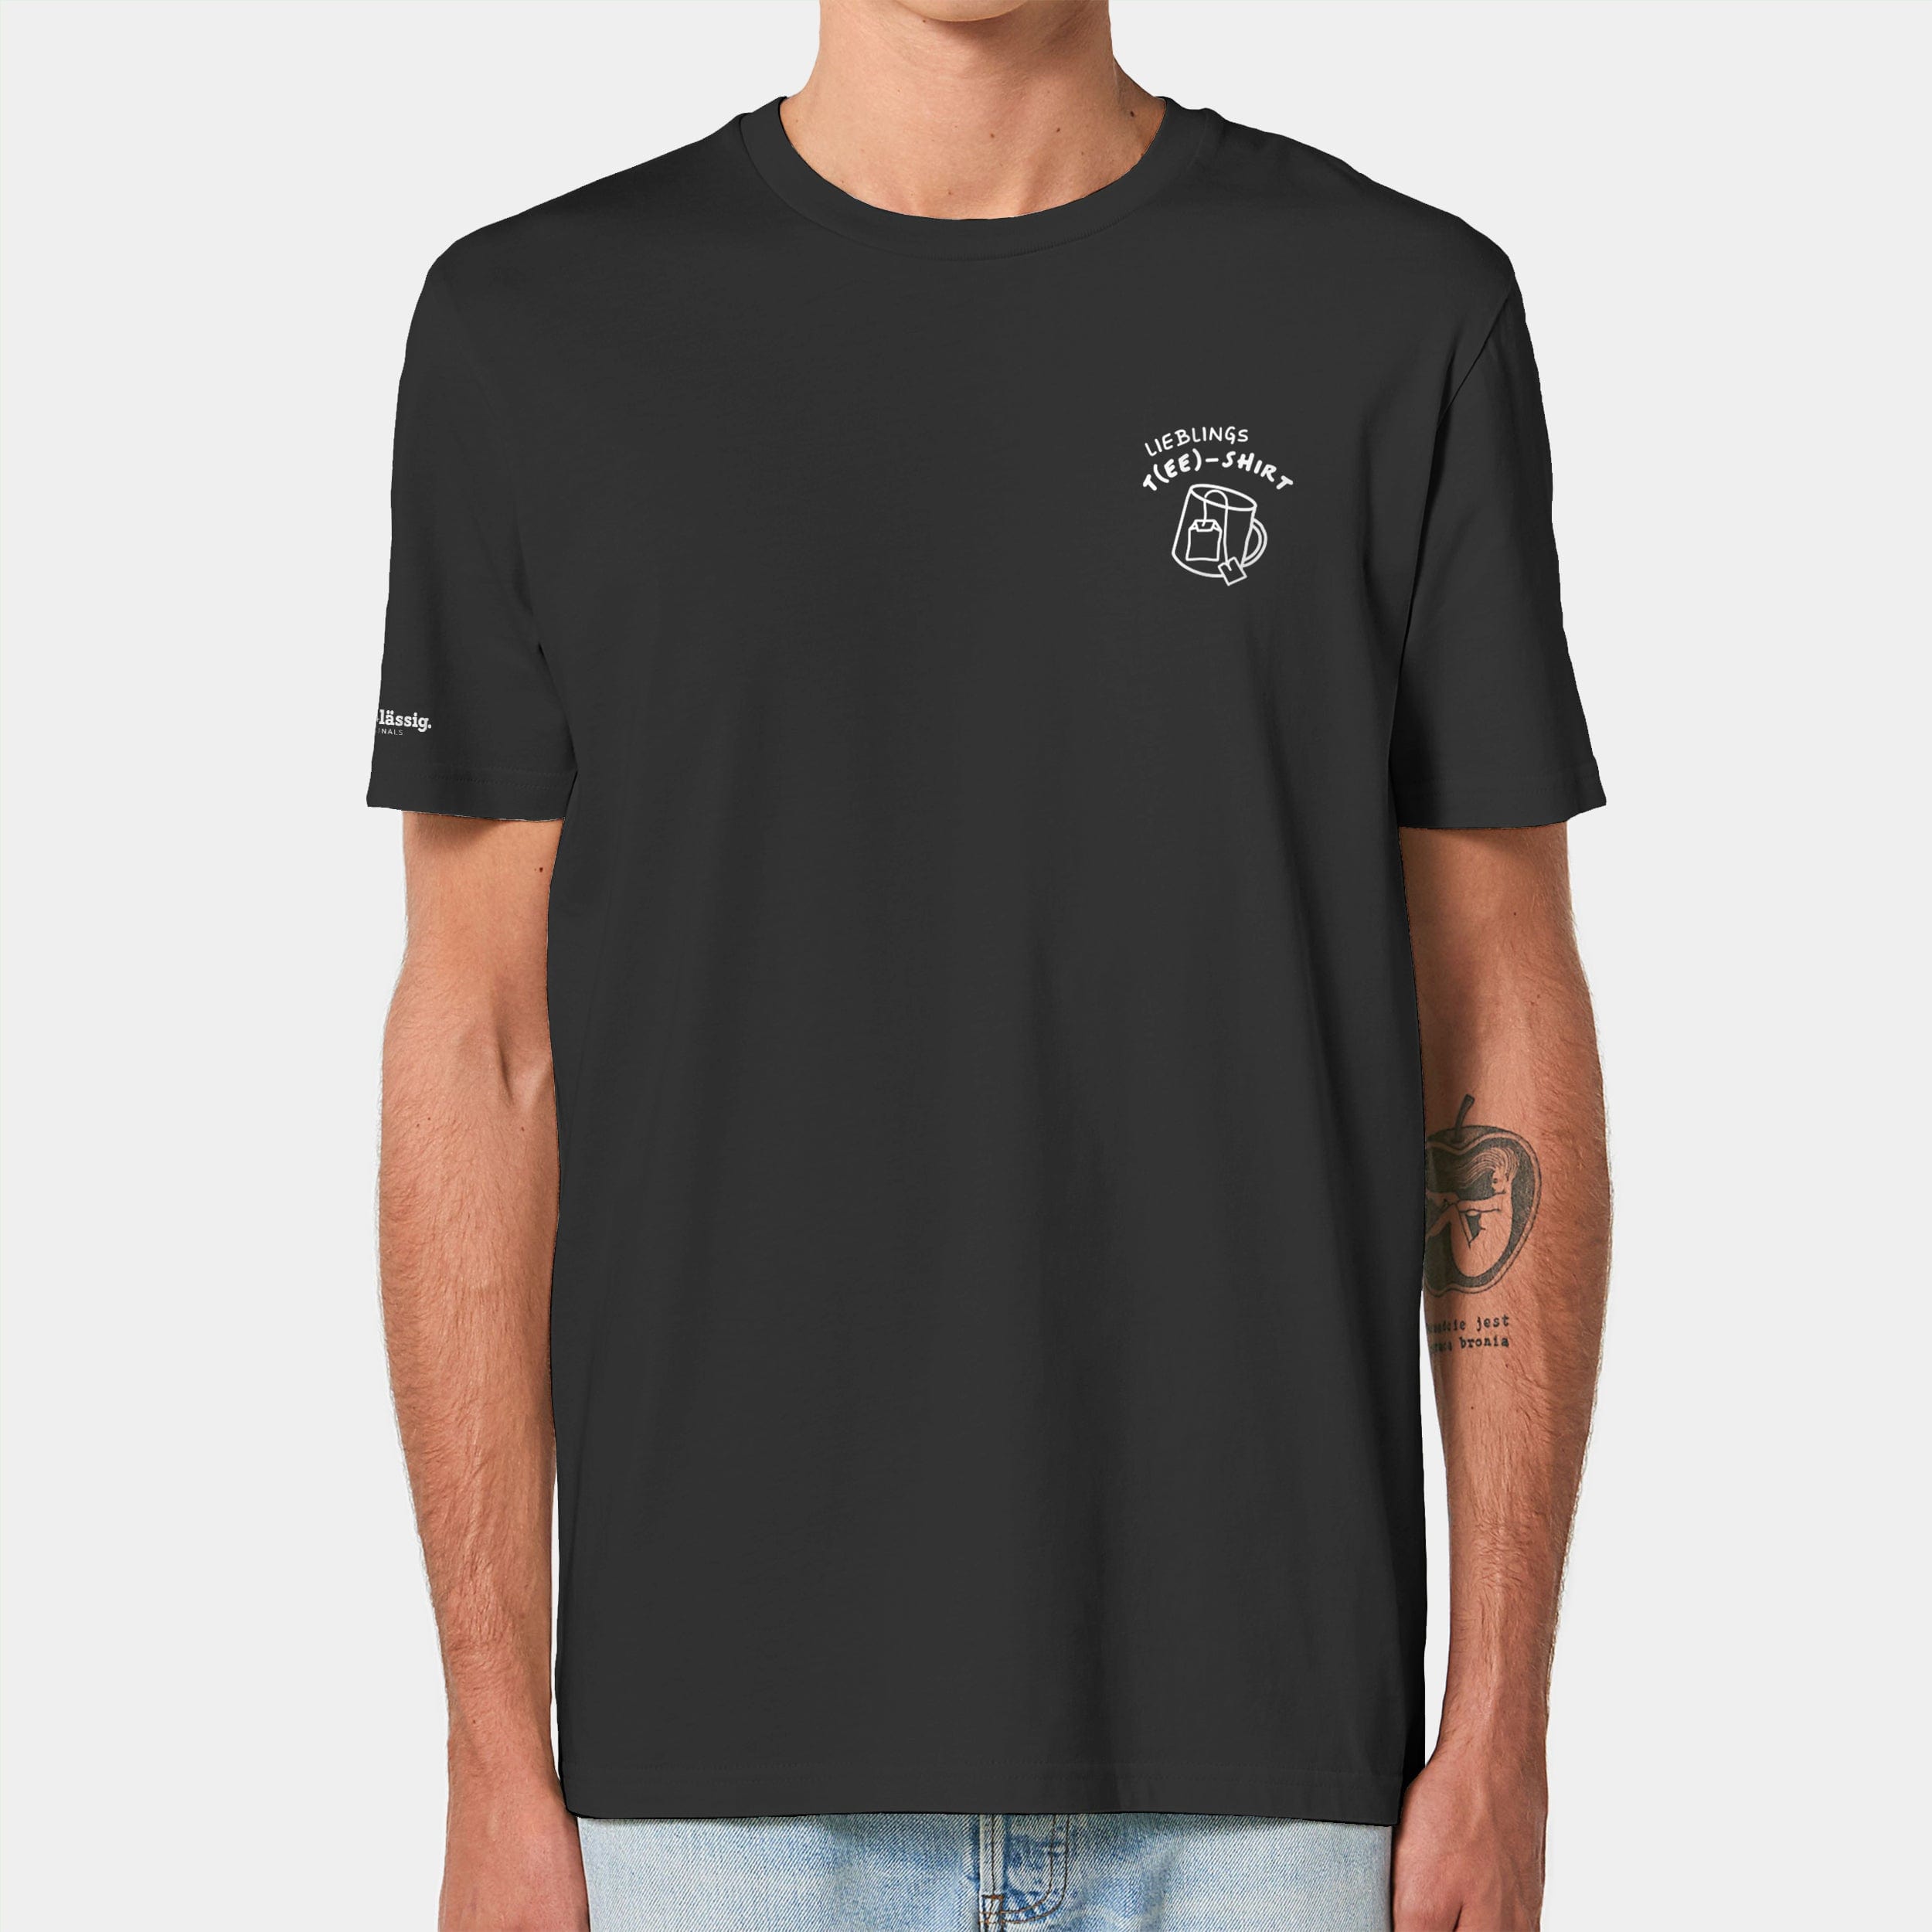 HEITER & LÄSSIG T-Shirt "lieblings T(EE)-Shirt" S / schwarz - aus nachhaltiger und fairer Produktion